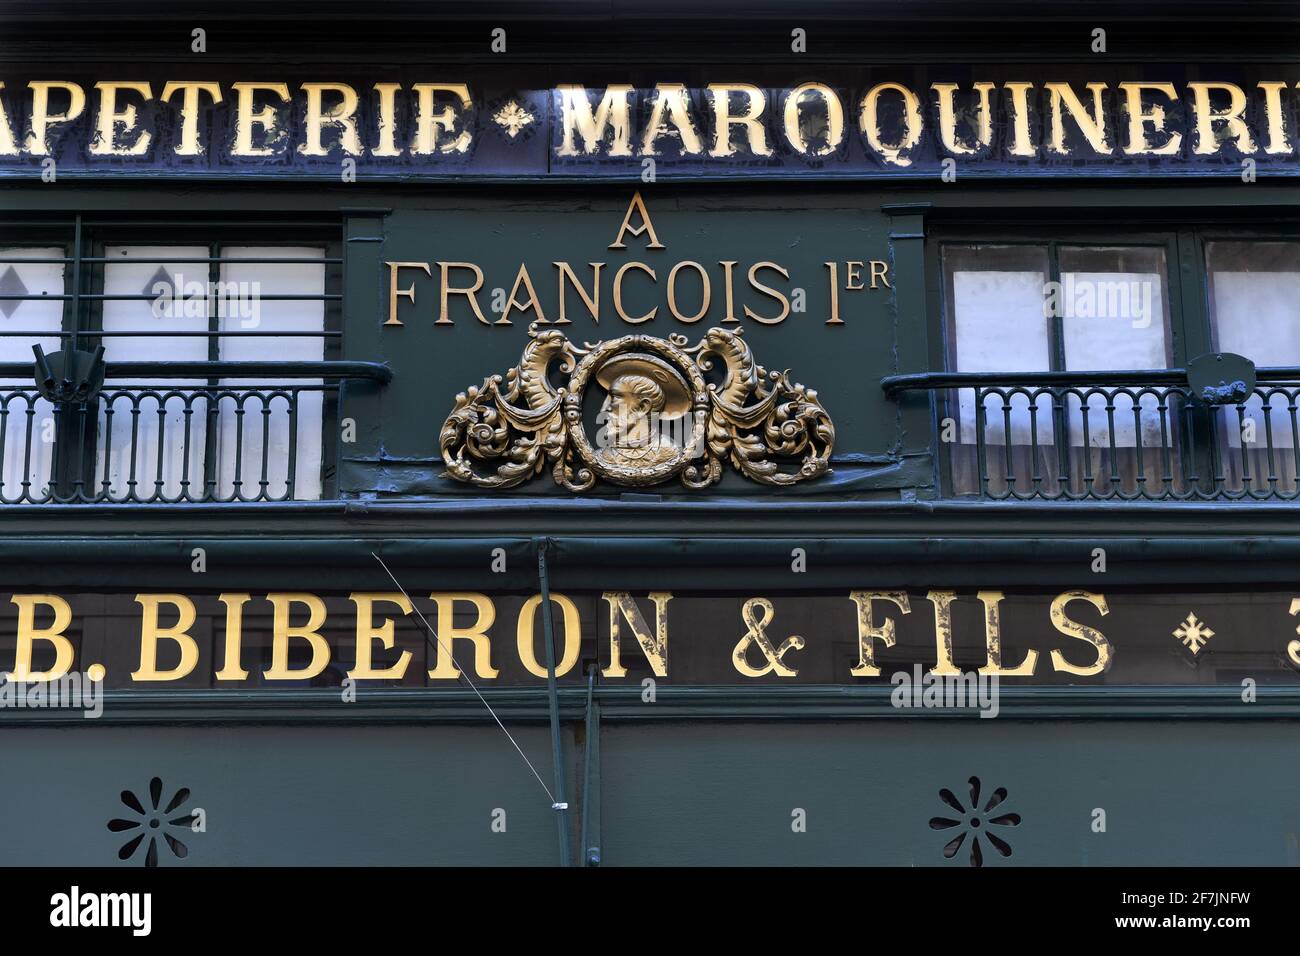 Papeterie Maroquinerie Biberon & Fils - Paris - France Stock Photo